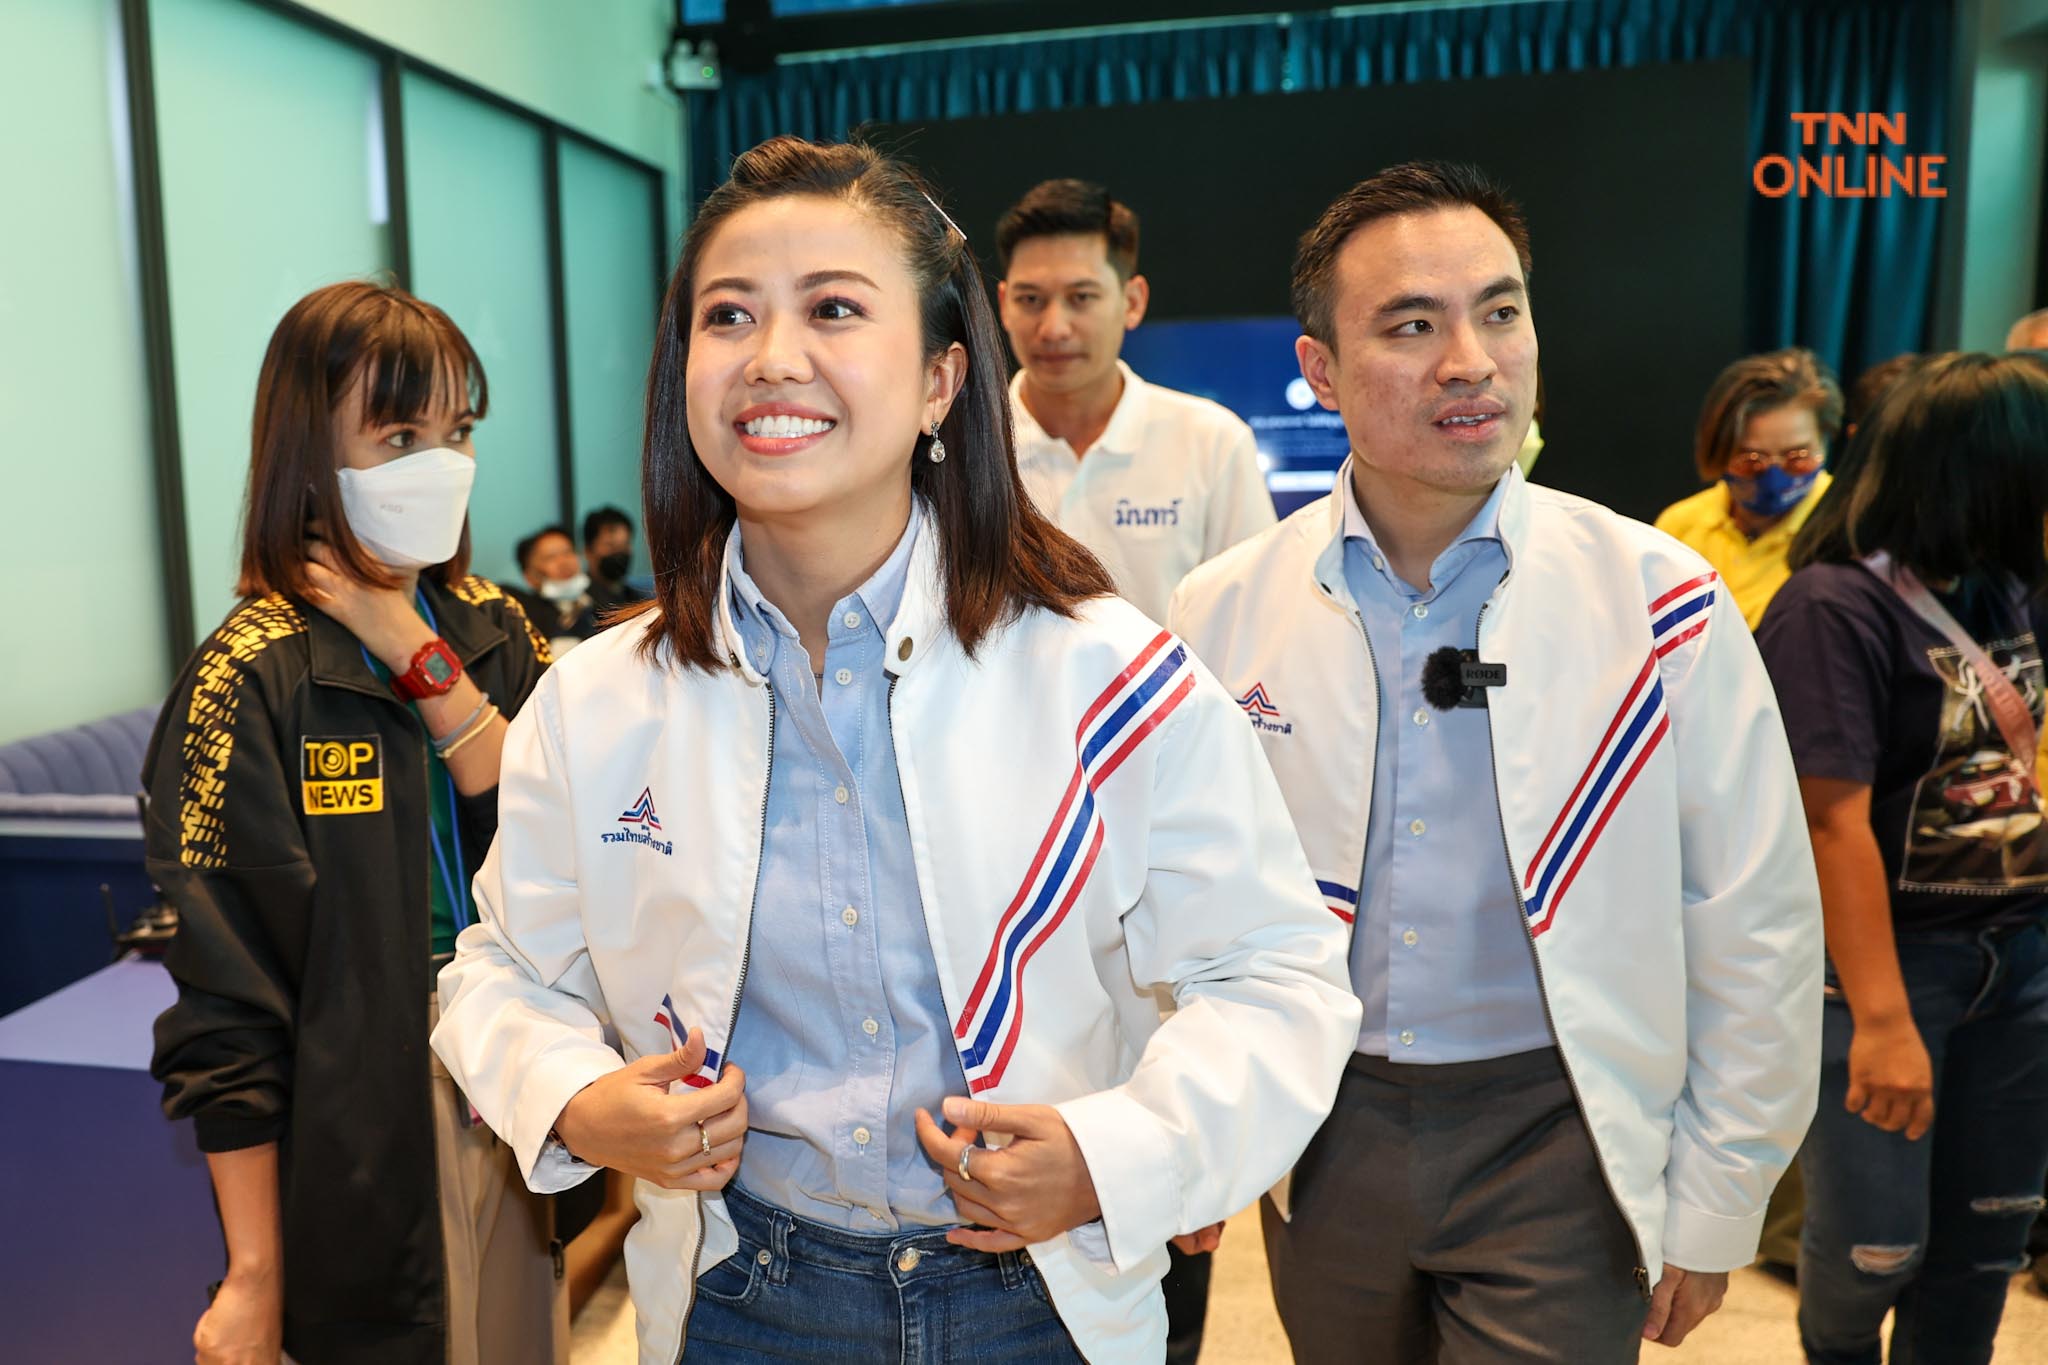 ทิพานัน สมัครรวมไทยสร้างชาติ พร้อมทำงานก่อนเปิดทีมงานคนรุ่นใหม่